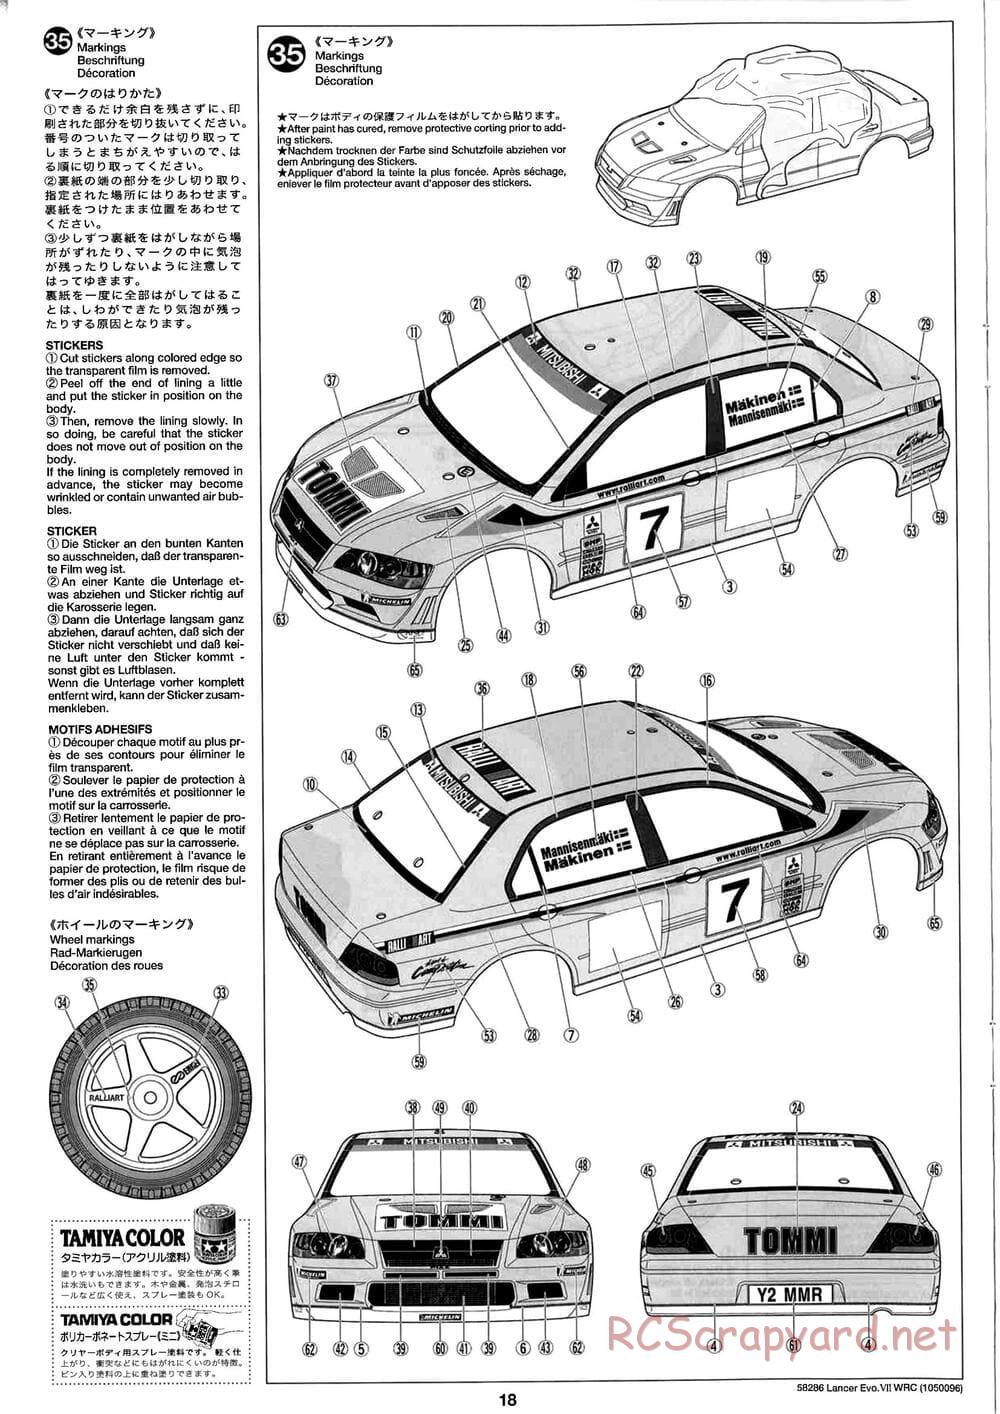 Tamiya - Mitsubishi Lancer Evolution VII WRC - TB-01 Chassis - Manual - Page 18